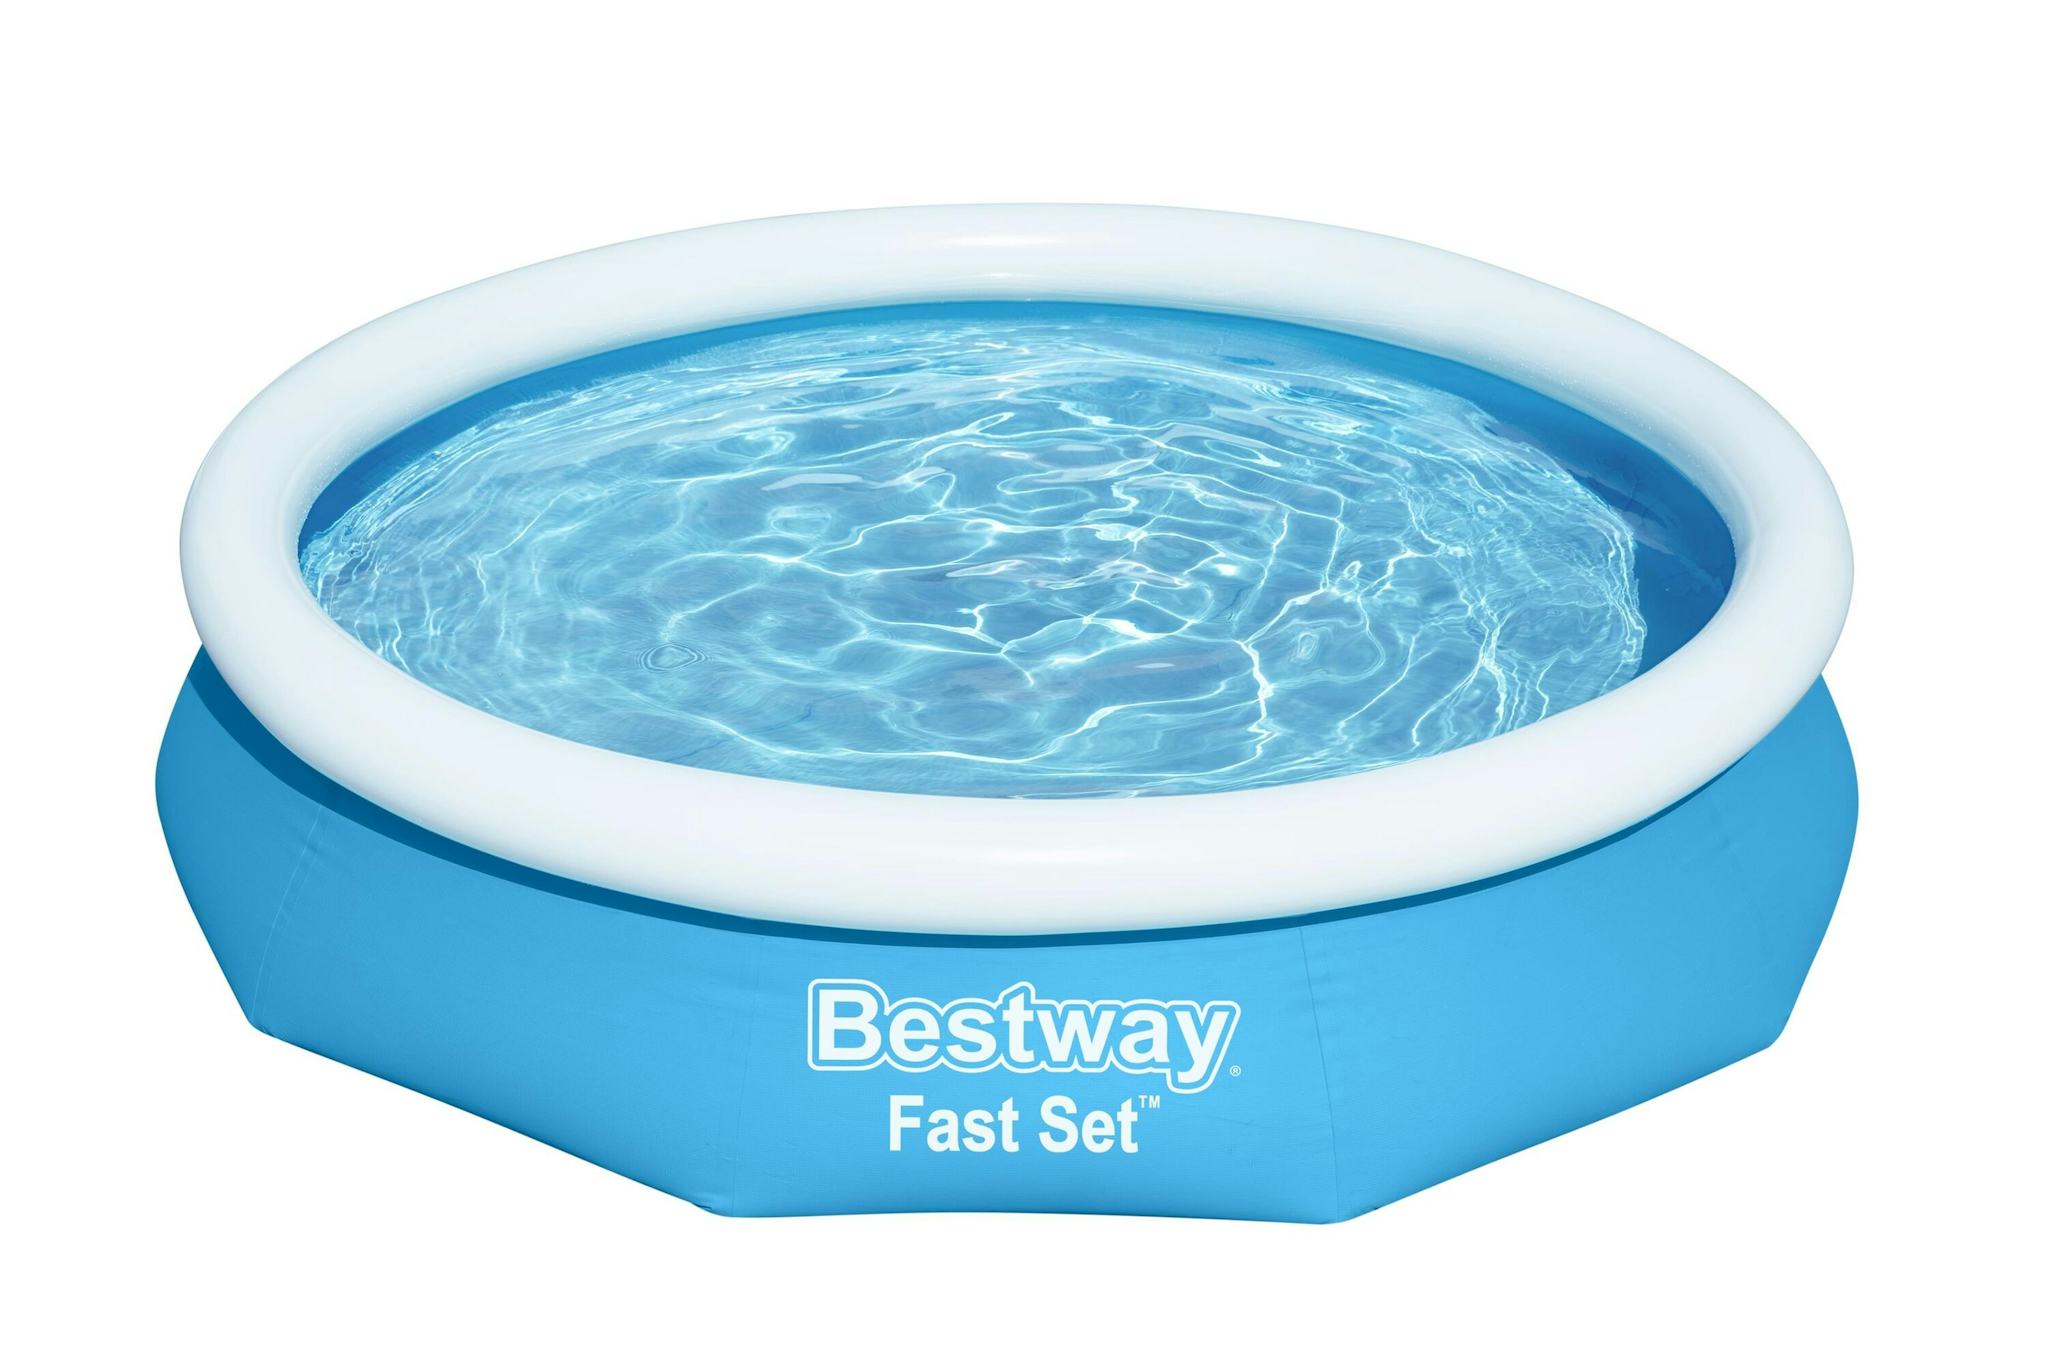 Bovengronds zwembad Fast Set bovengronds rond opblaasbaar zwembad van 305x66 cm blauw Bestway 1